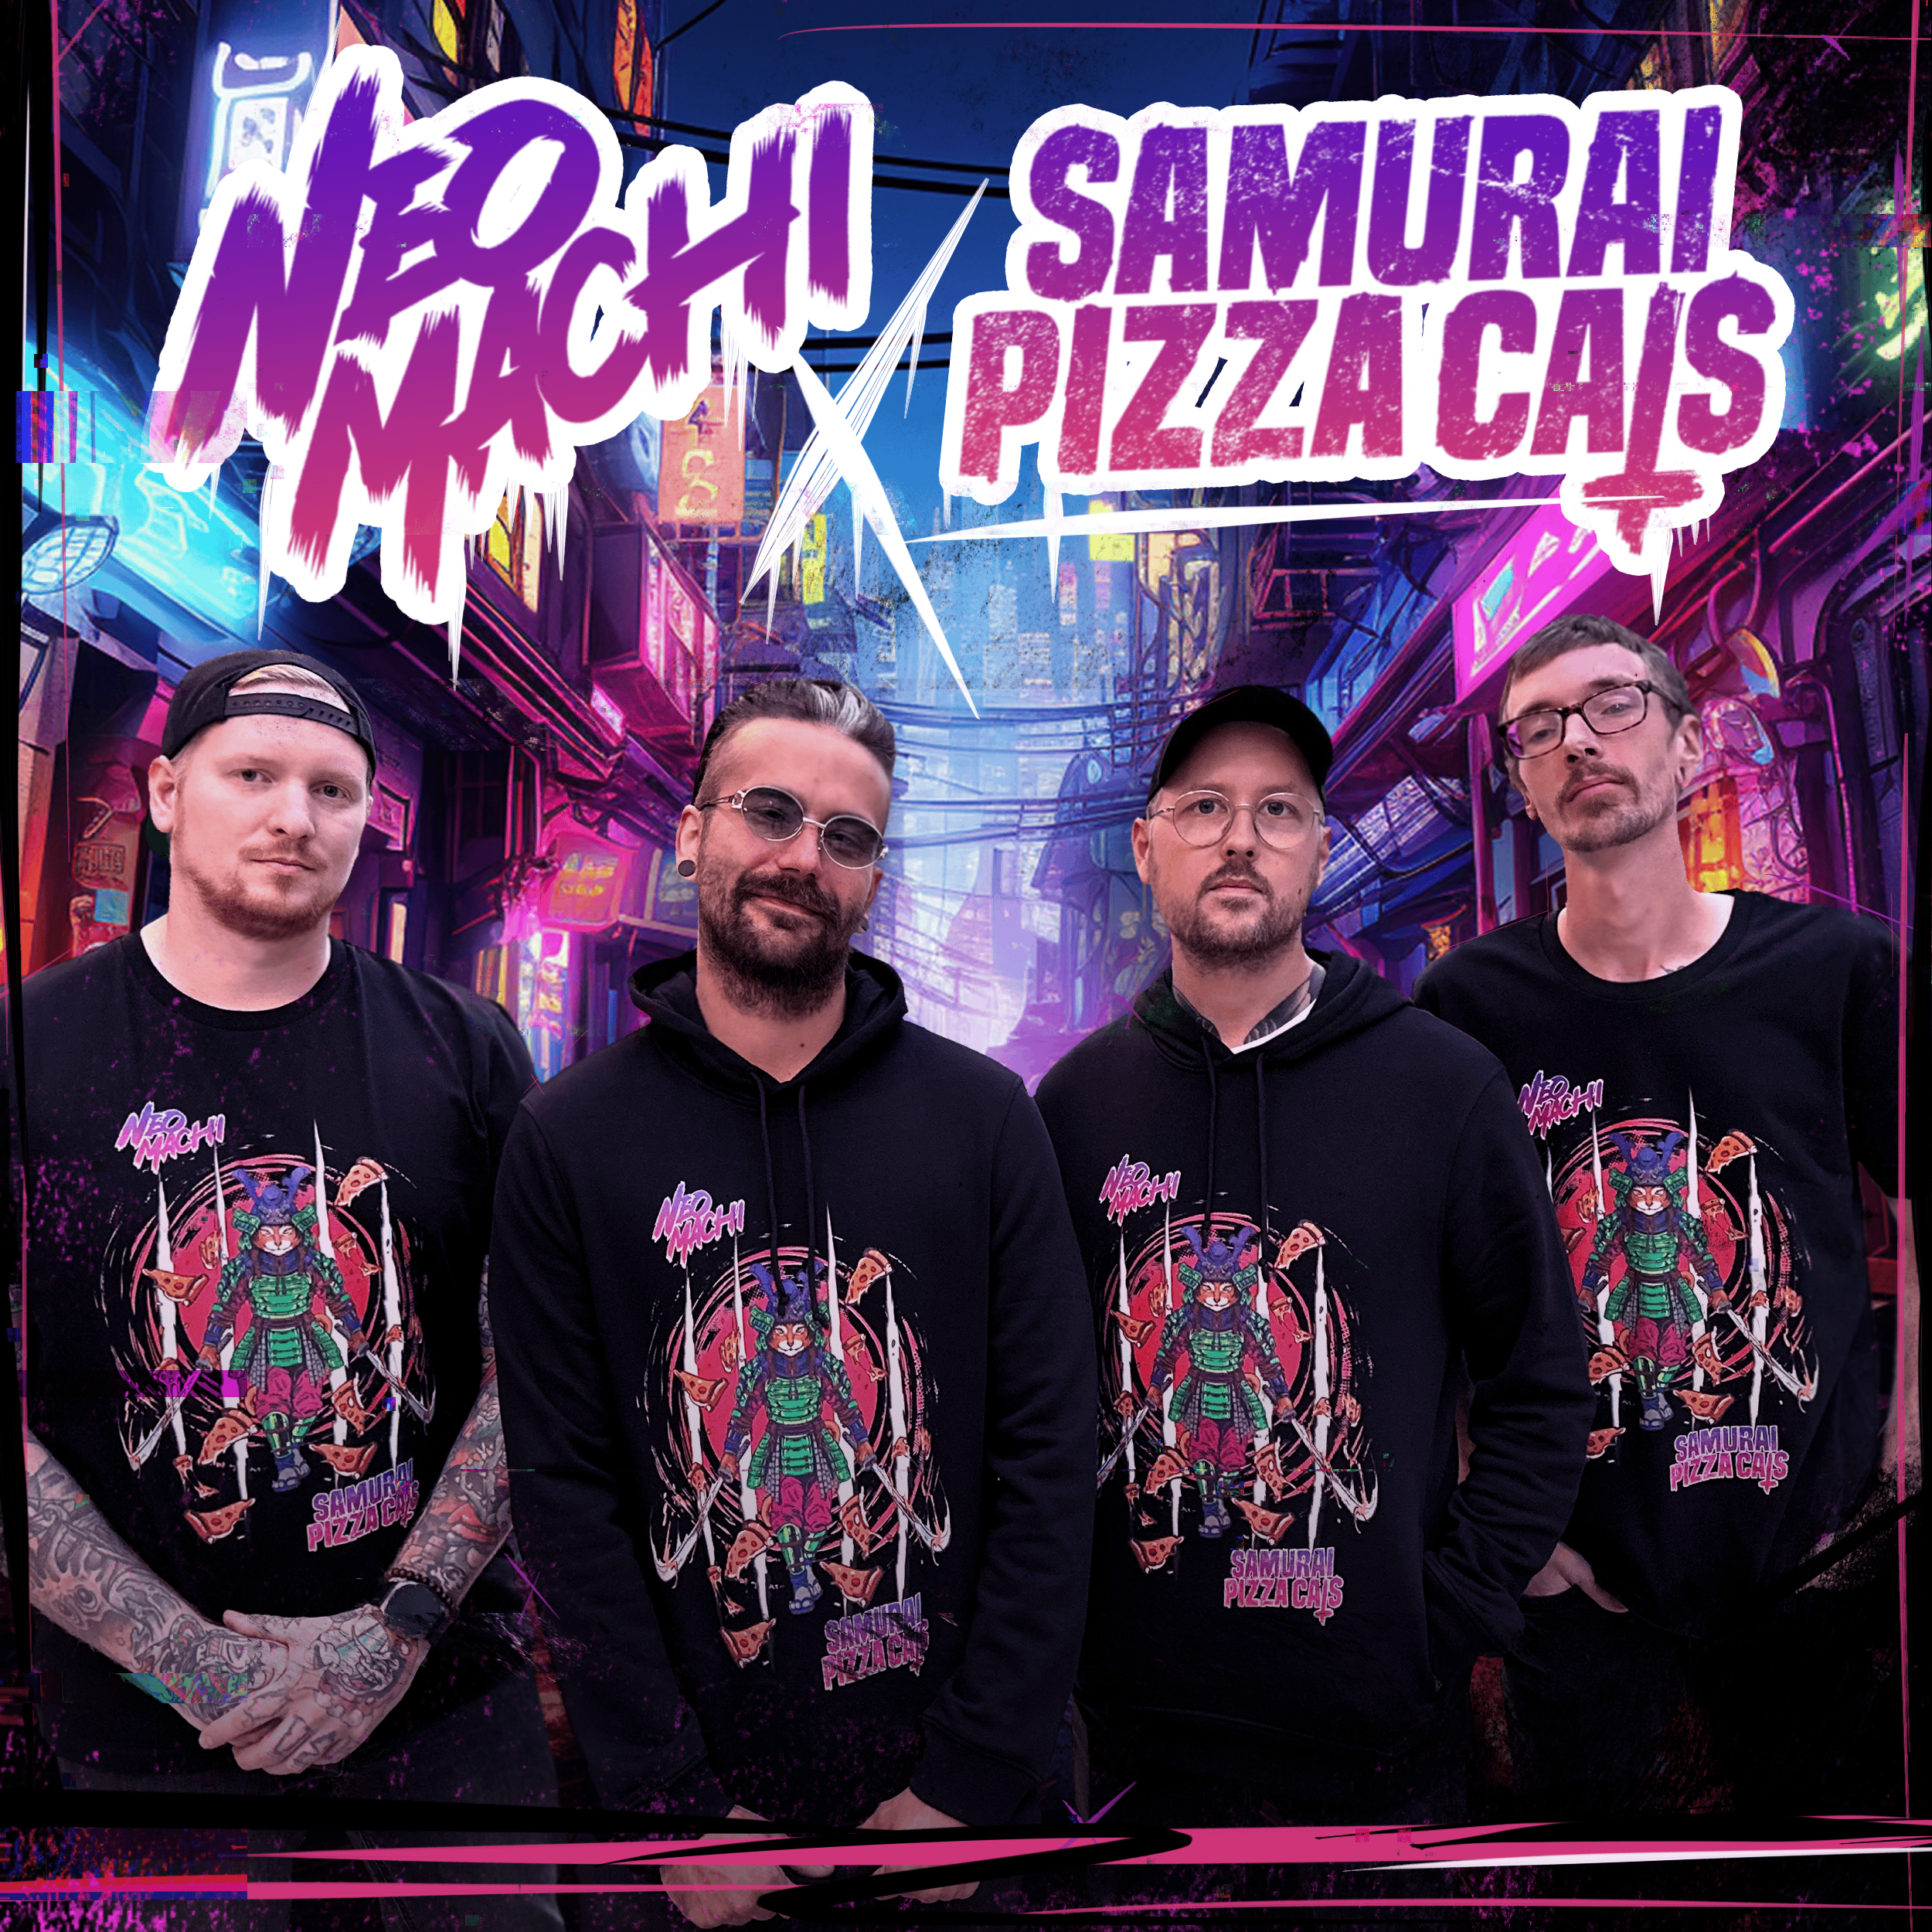 NEOMACHI Cyberpunk T-shirt Samurai Pizza Cats Band Pic